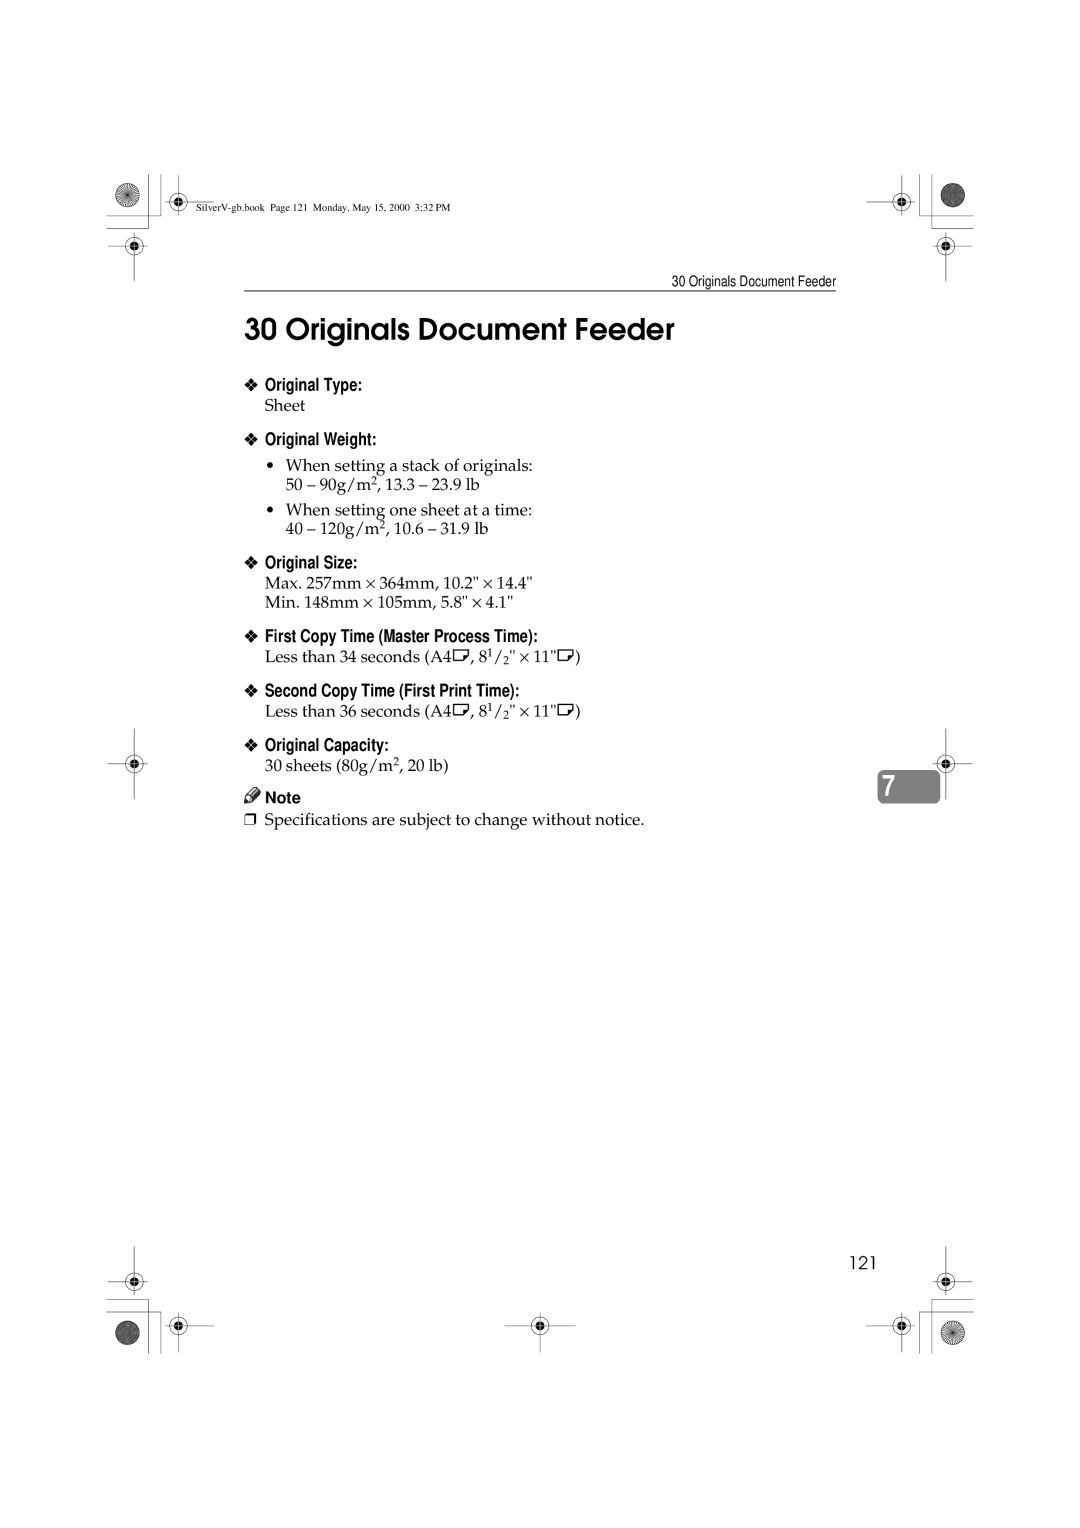 Ricoh JP1210/1250, Priport manual Originals Document Feeder, Original Weight, Original Capacity 